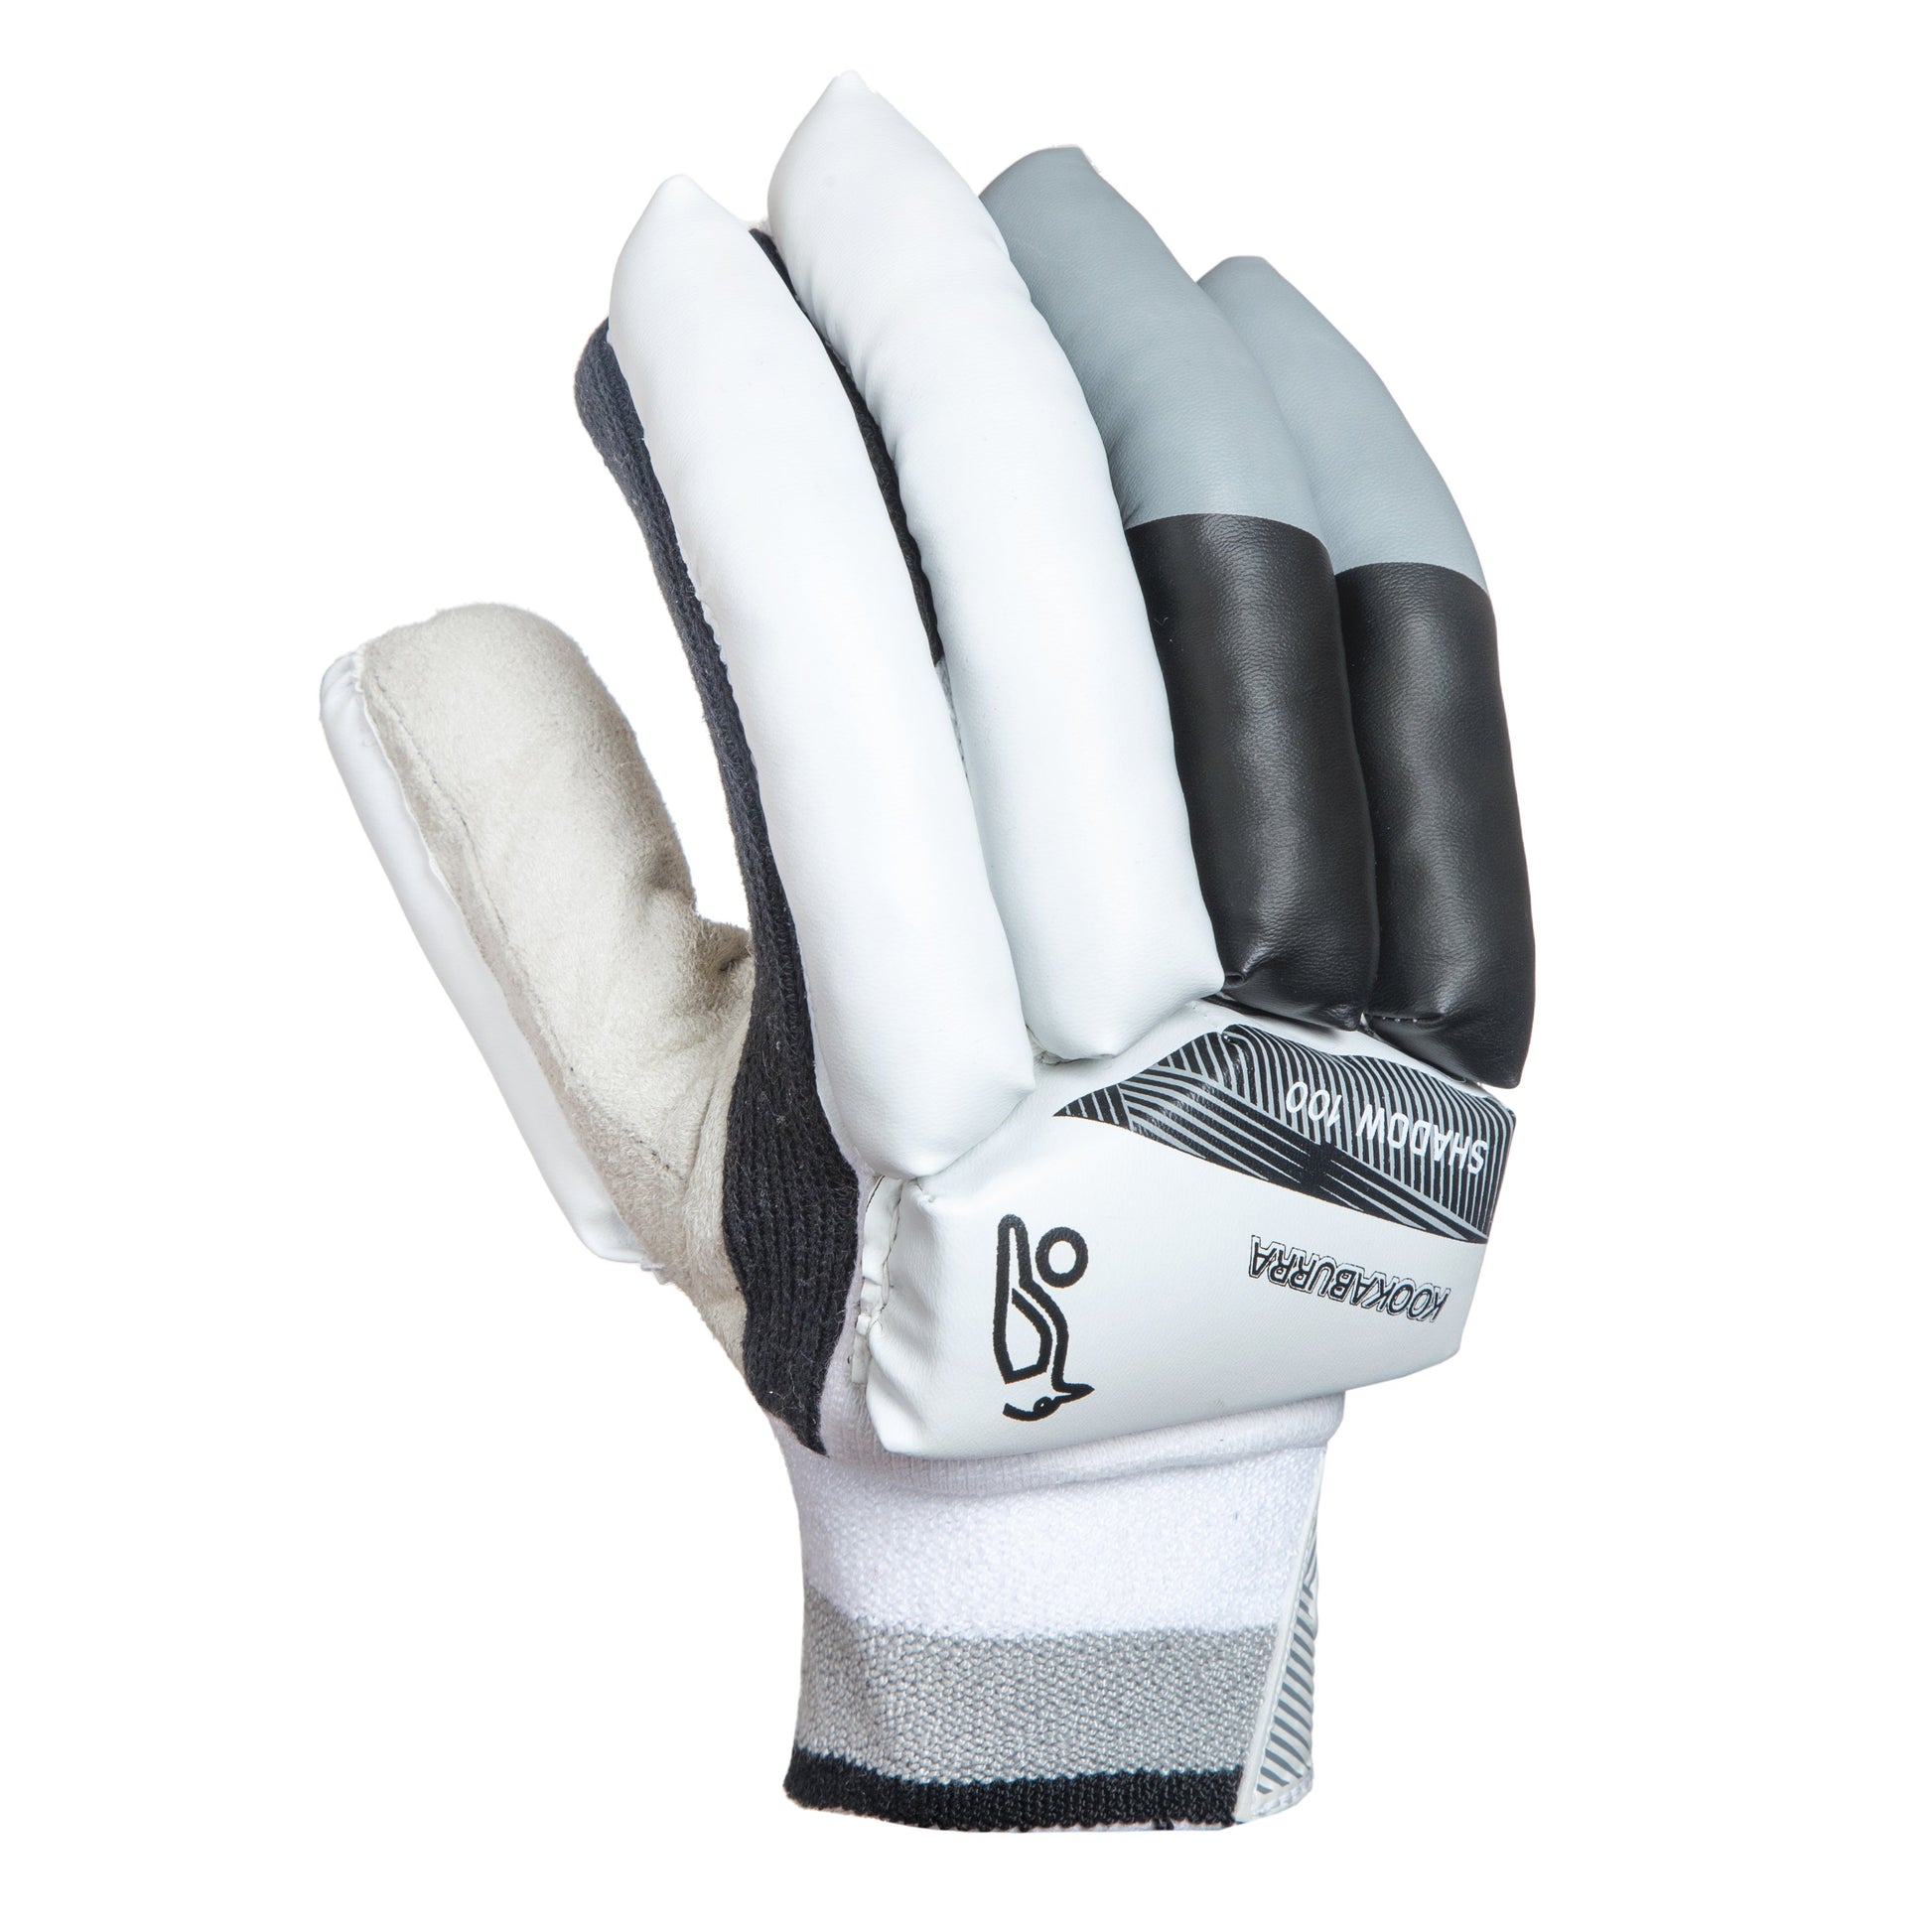 KOOKABURRA Cricket Battting Gloves SHADOW 100